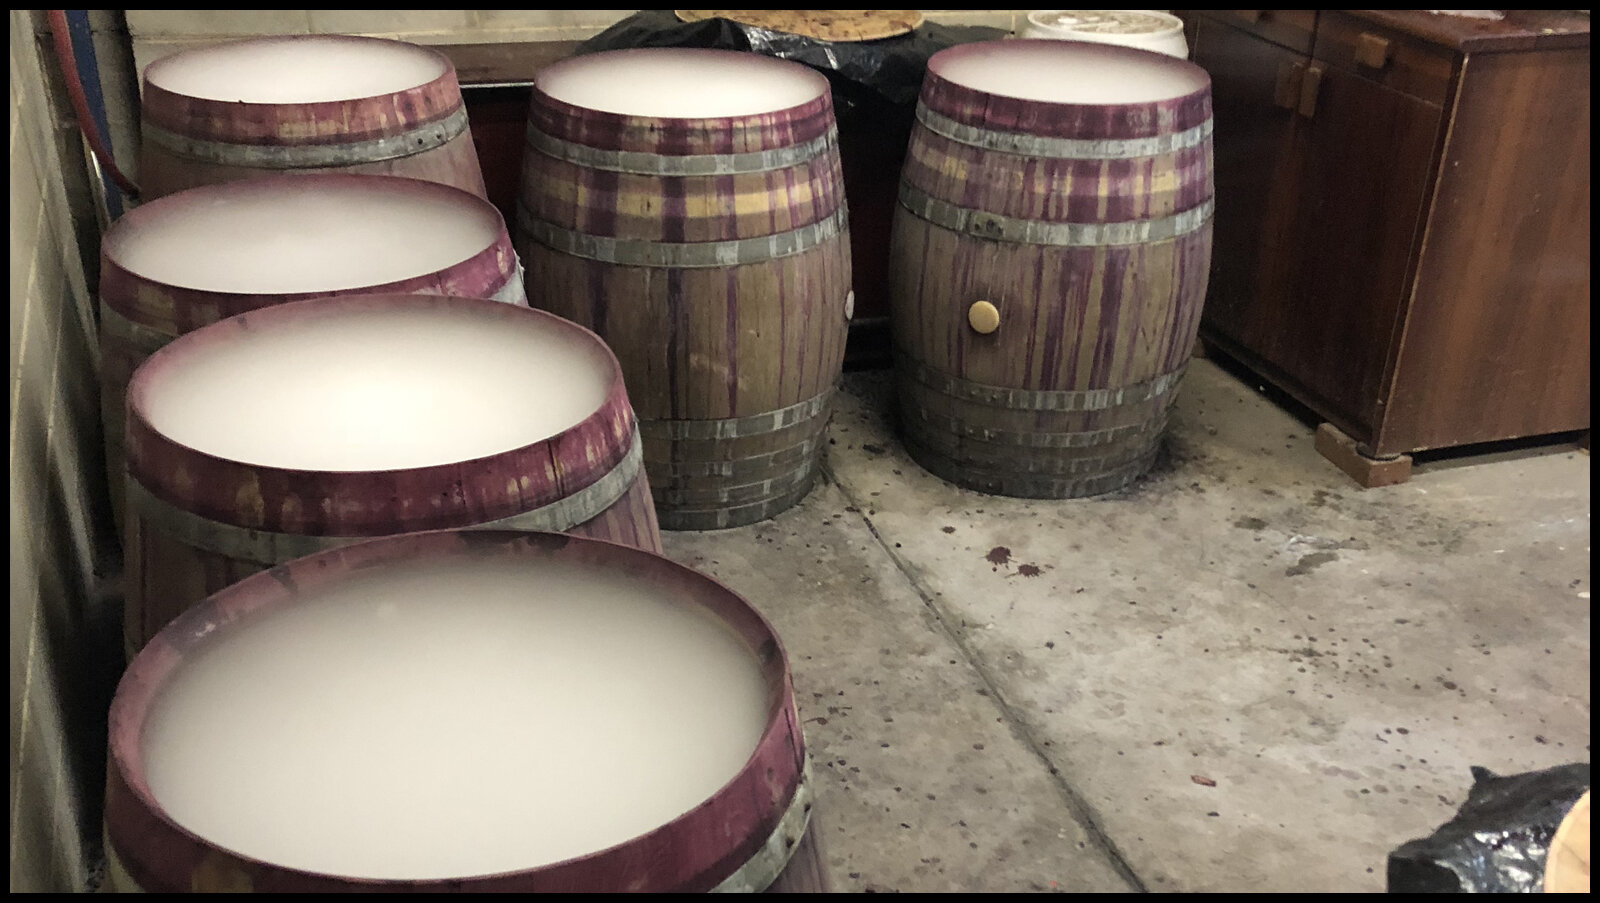 Barrel ferments